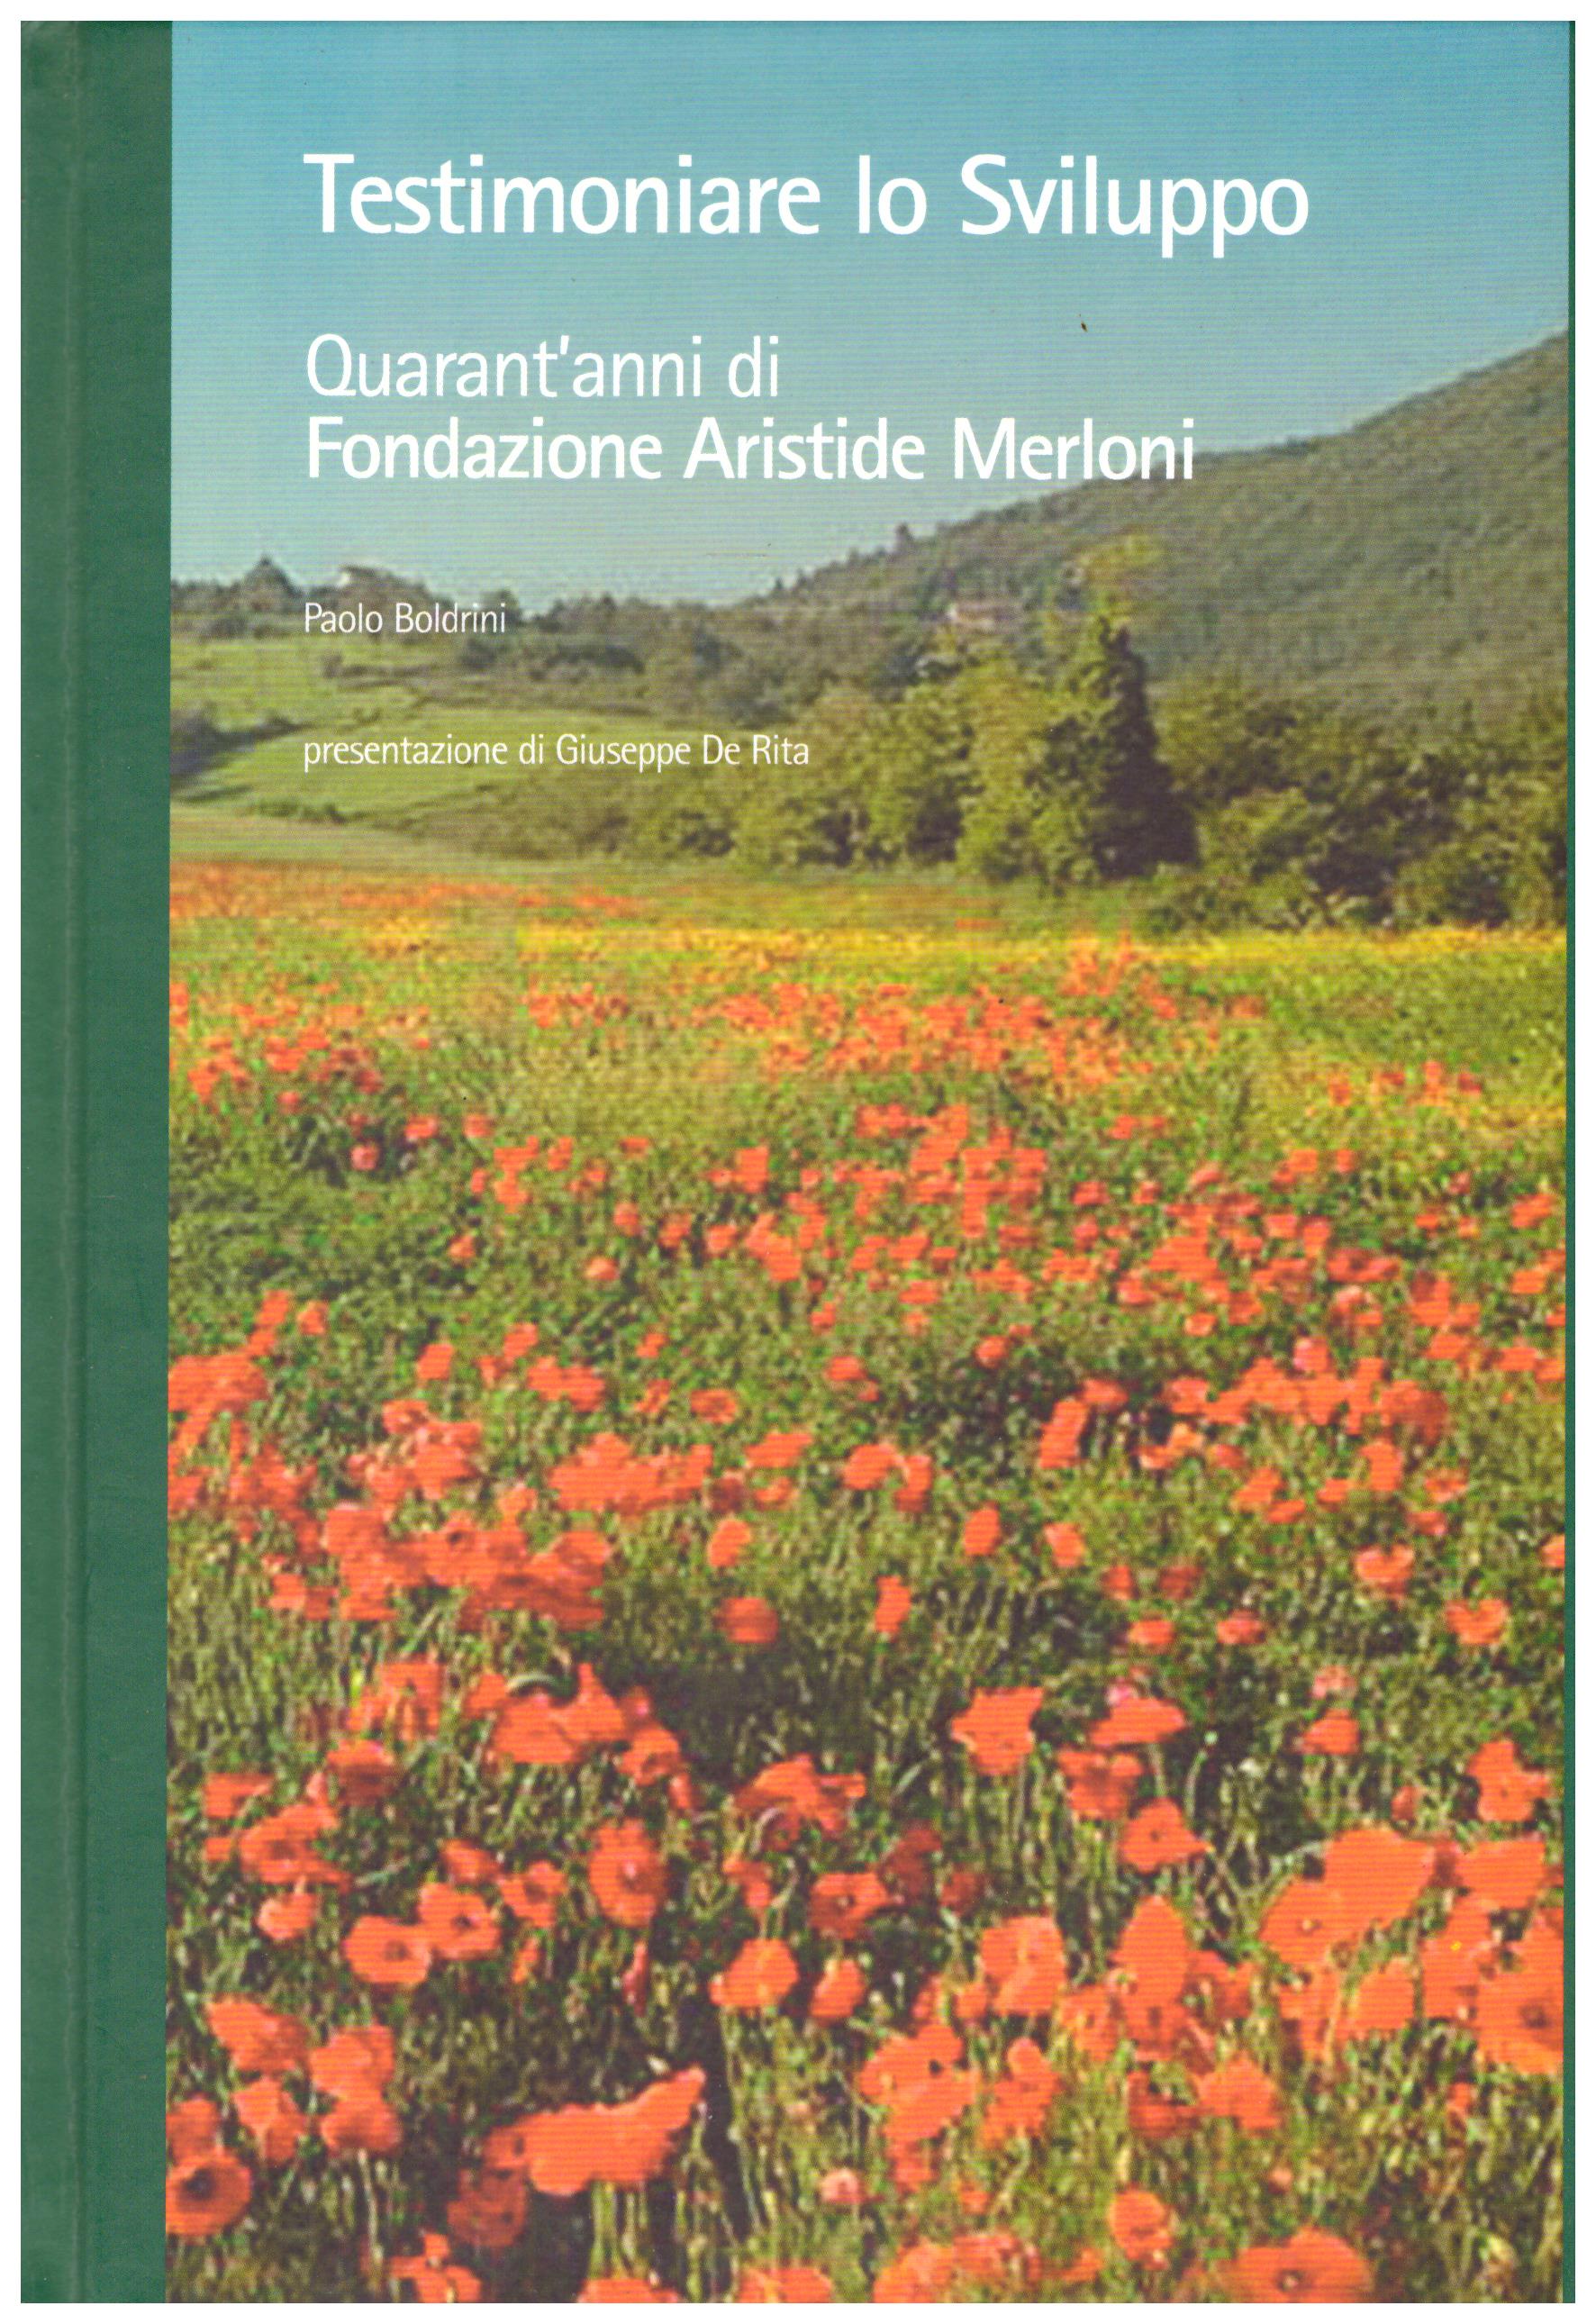 Titolo: Testimoniare lo sviluppo     Autore: Paolo Boldrini    Editore: Fondazione Aristide Merloni